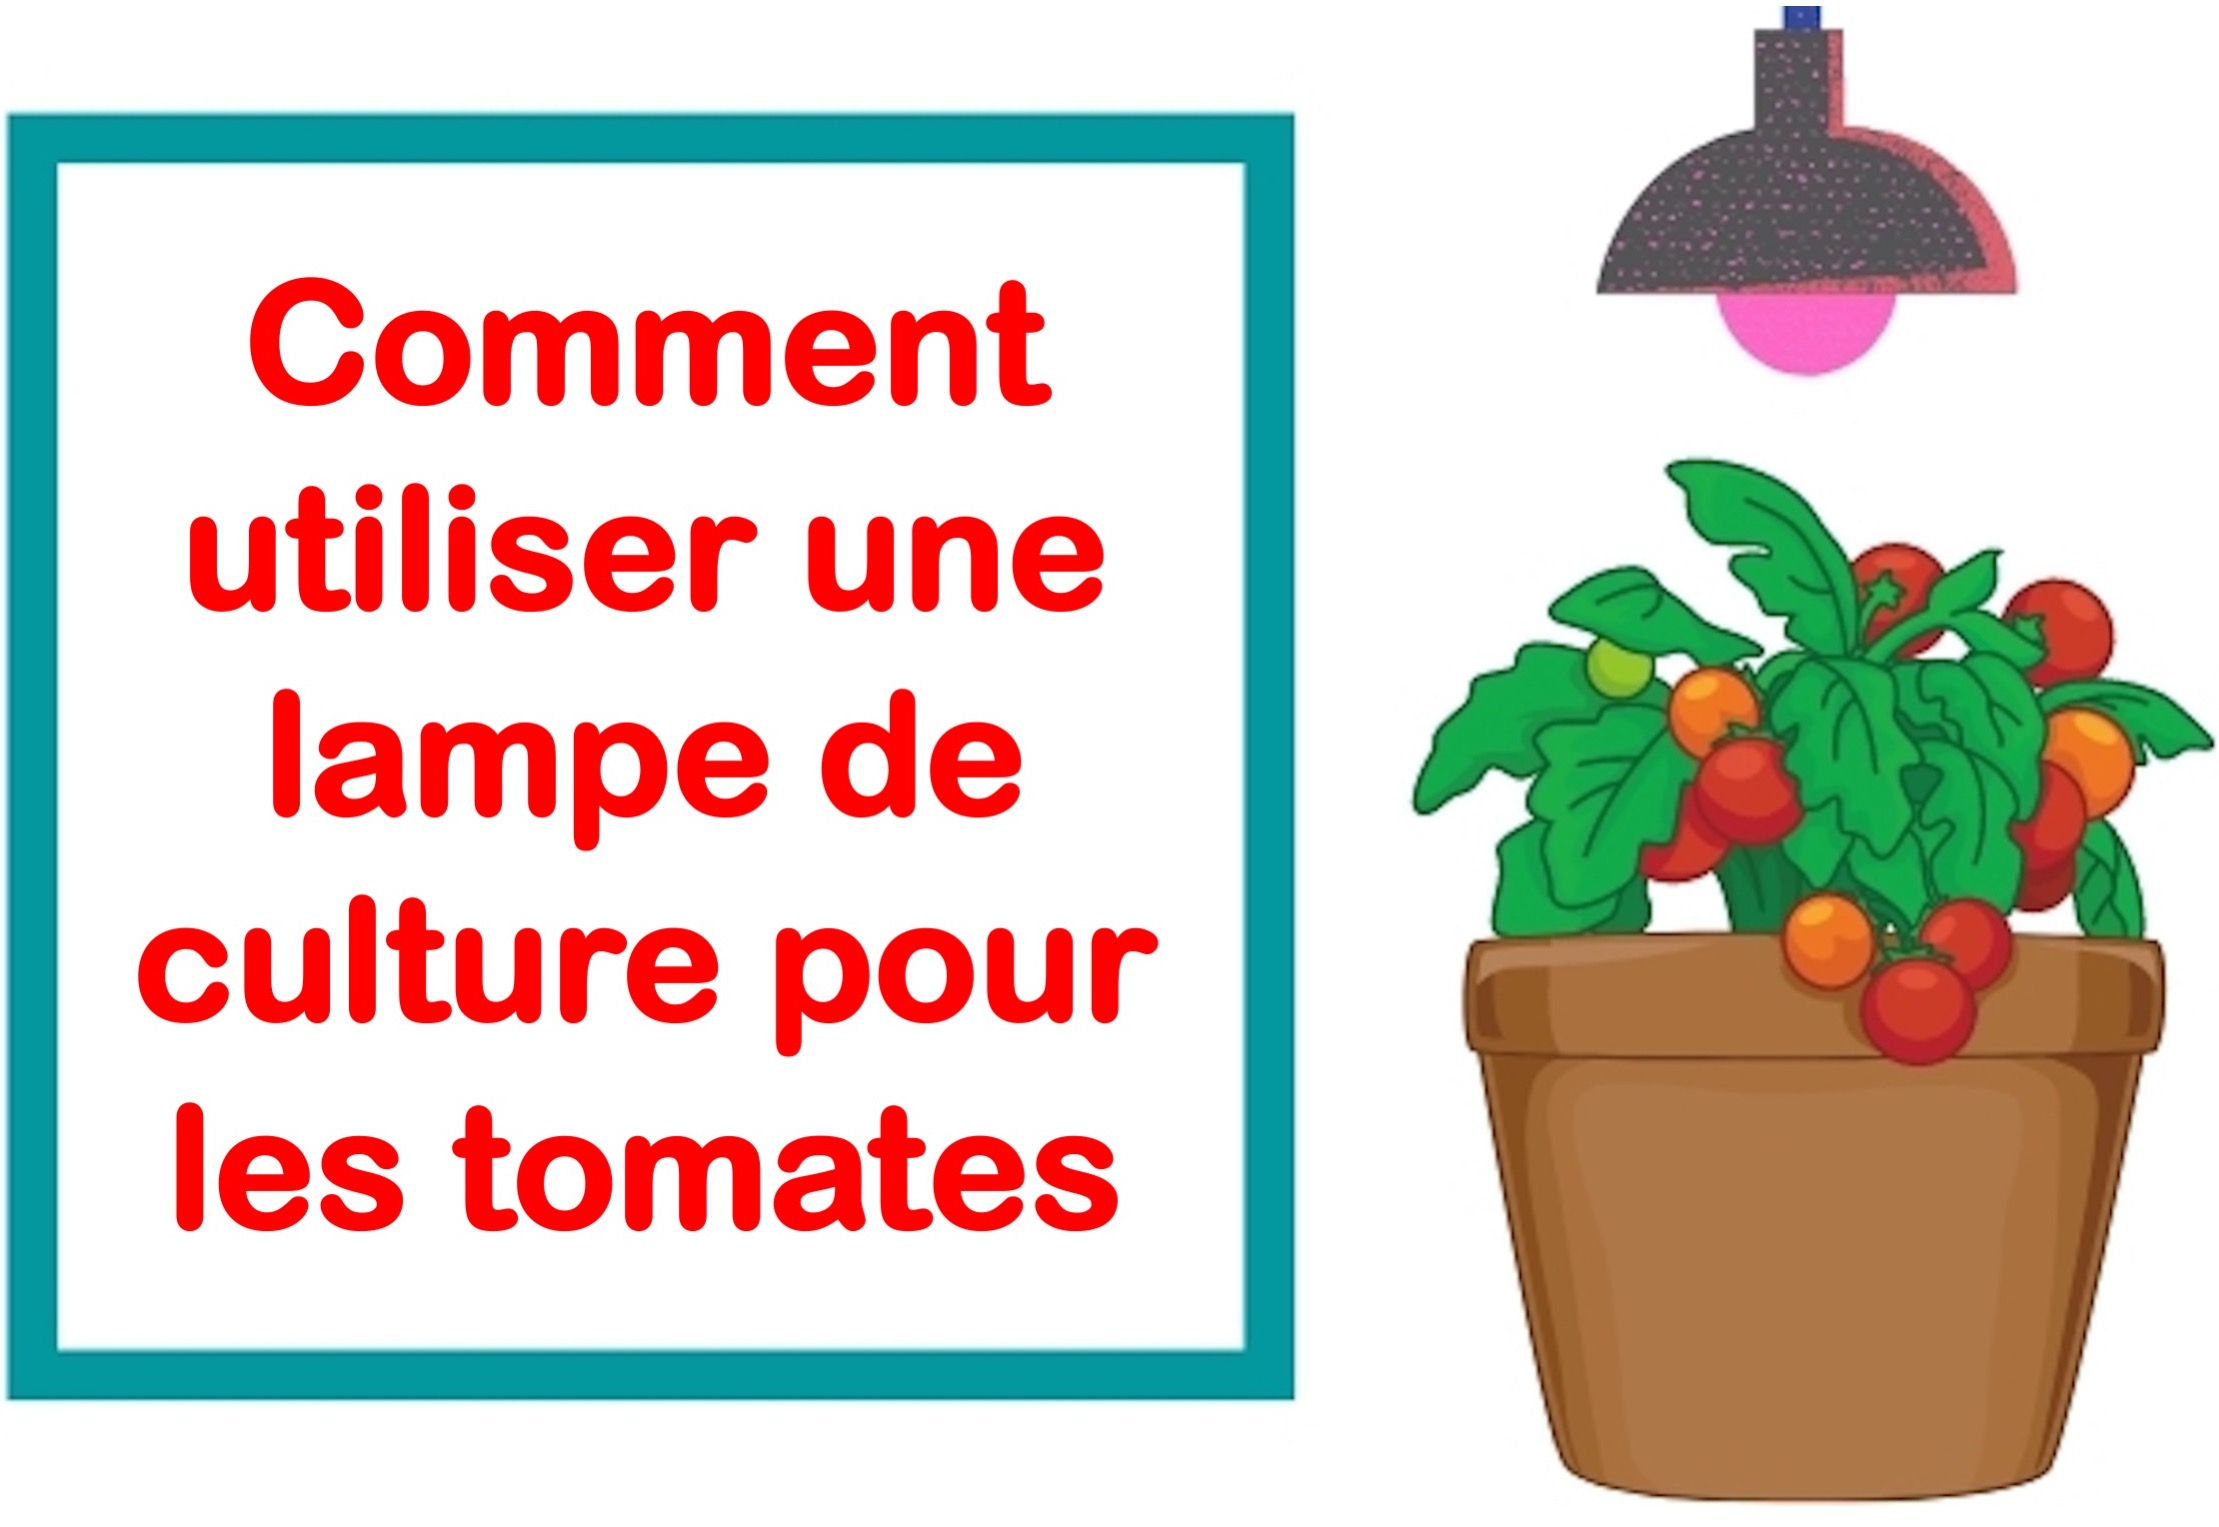 Comment utiliser une lampe de culture pour les tomates